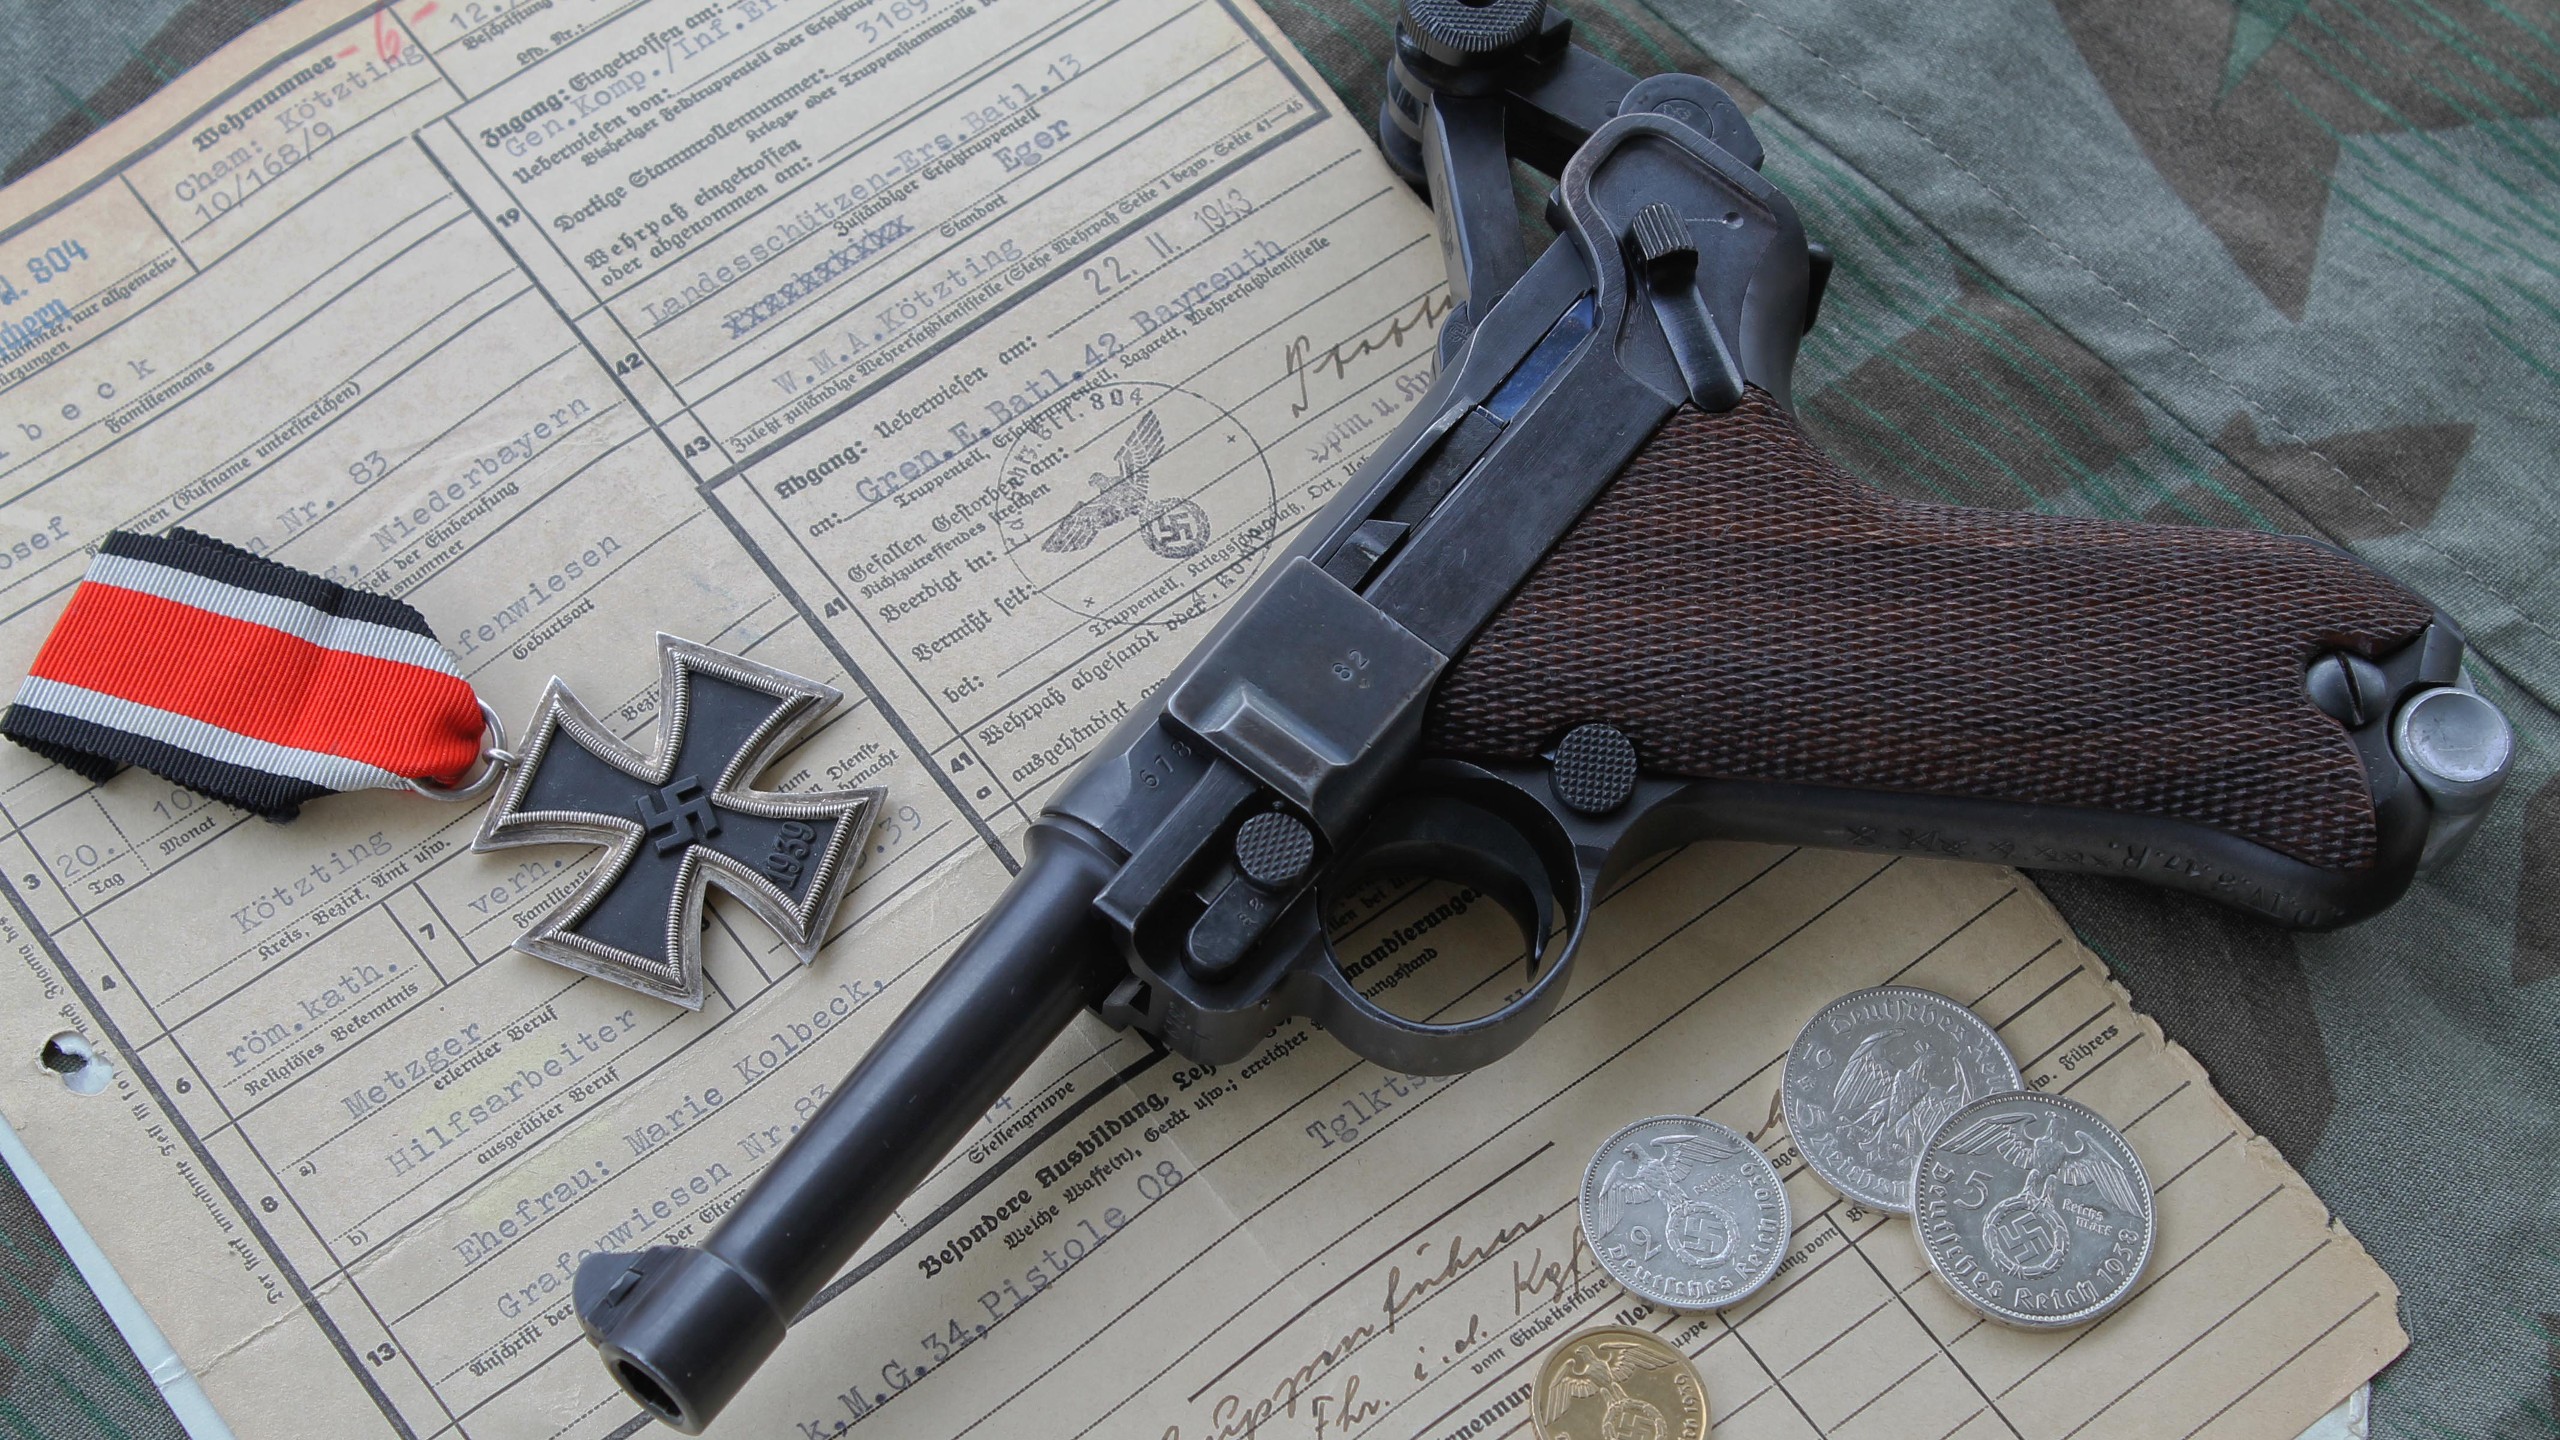 General 2560x1440 gun pistol Luger P08 World War II Iron Cross Nazi weapon German firearms